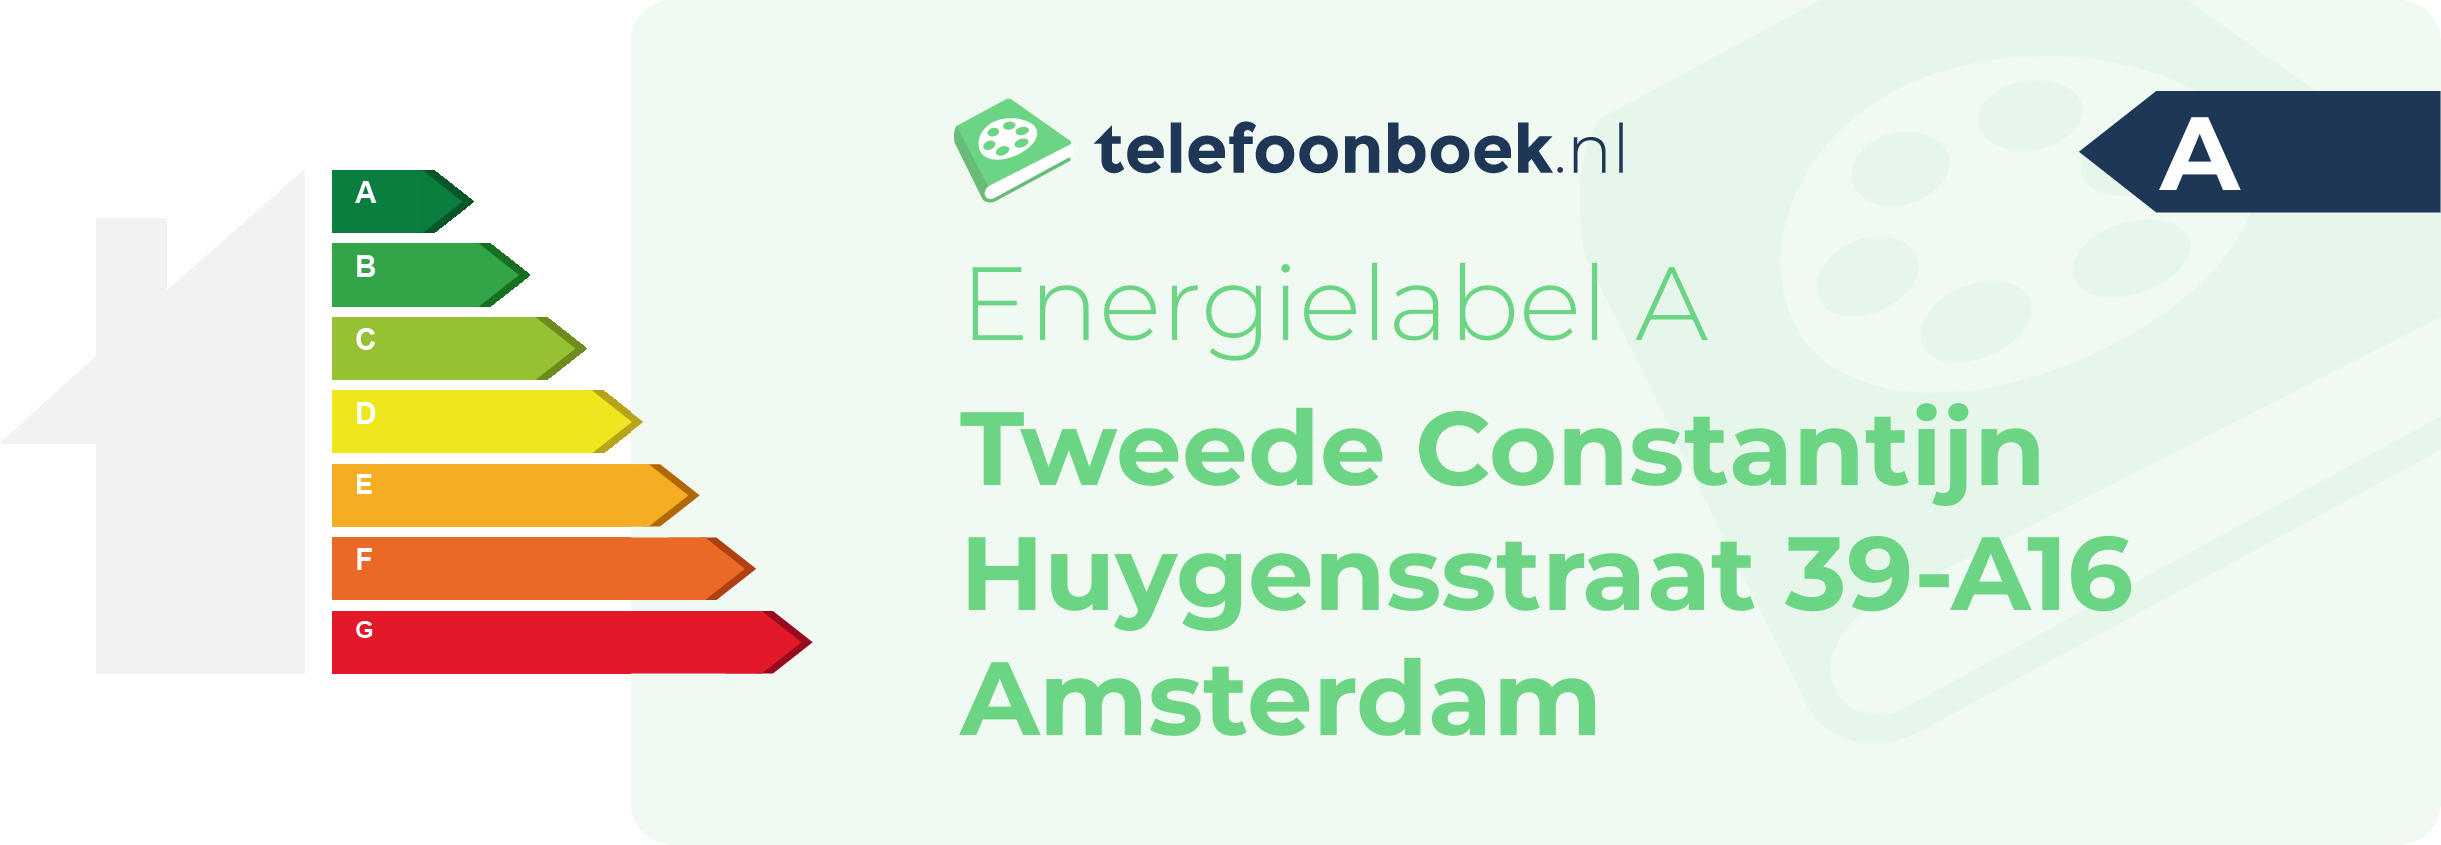 Energielabel Tweede Constantijn Huygensstraat 39-A16 Amsterdam